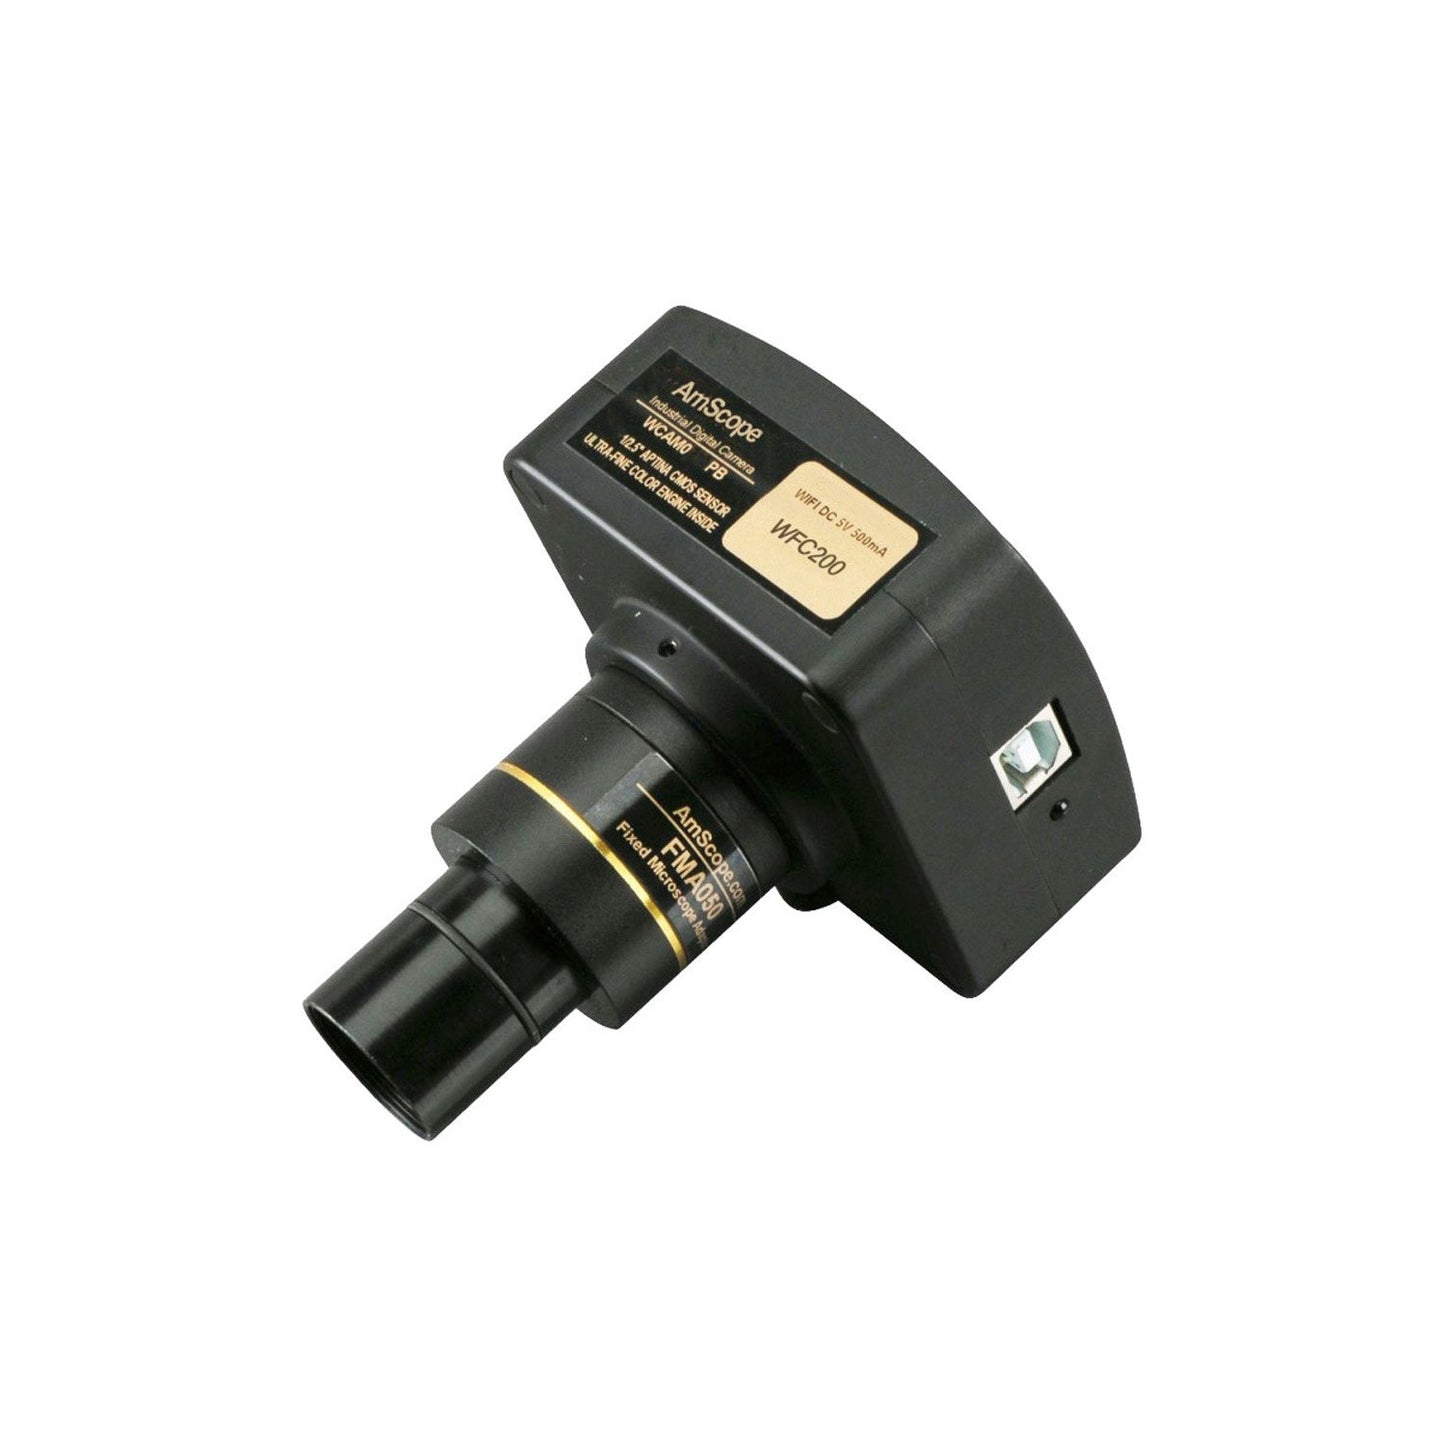 1080p Wi-Fi Microscope Digital Camera + Software